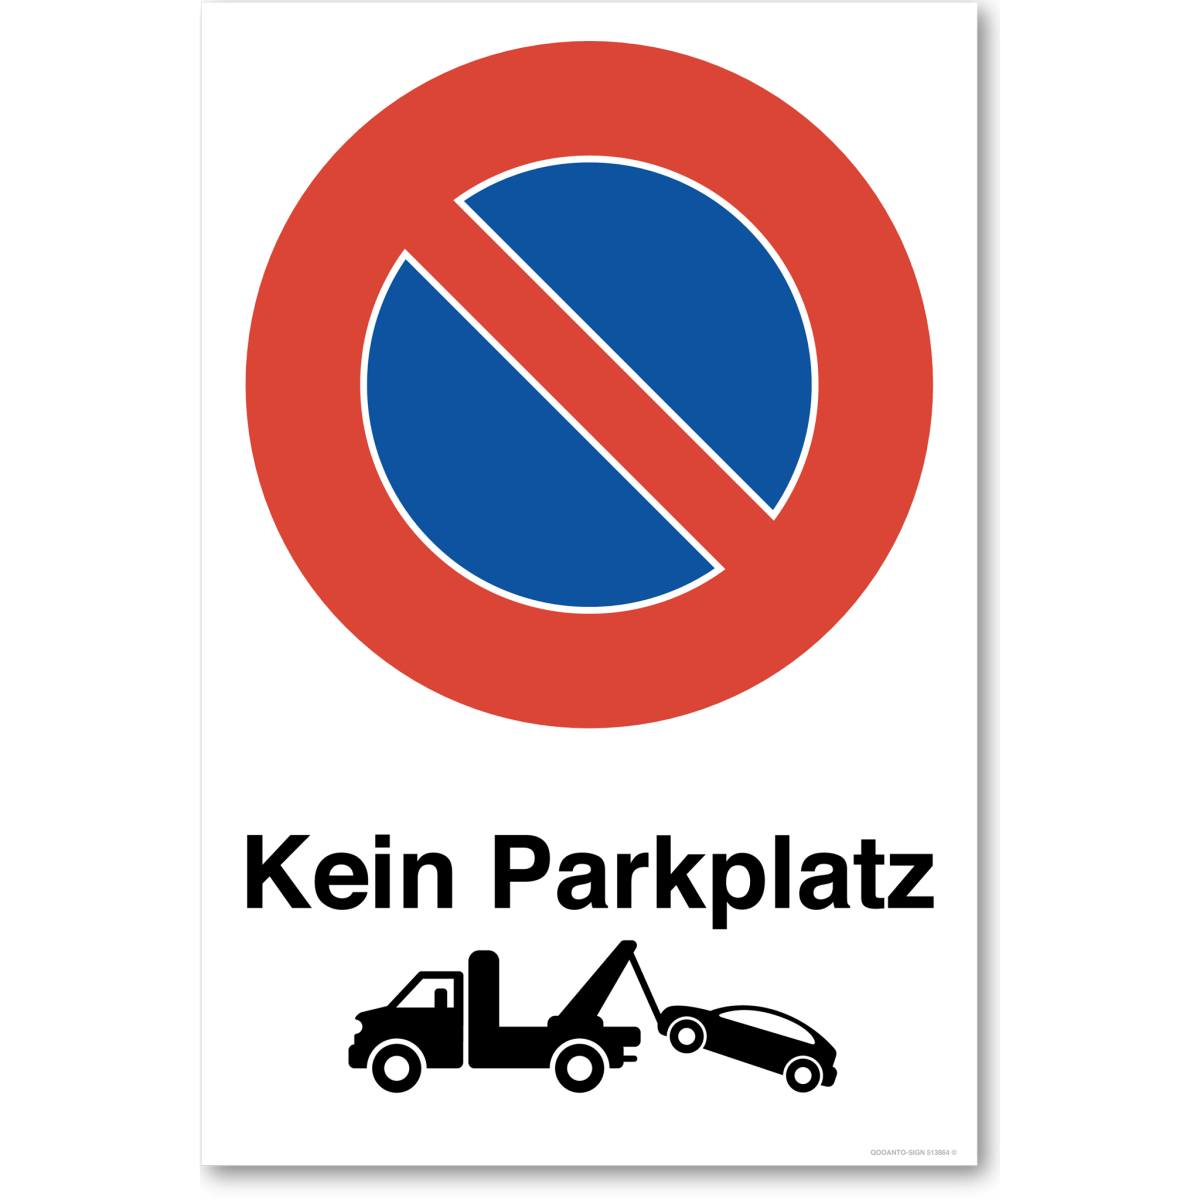 Parkplatz Parkverbotsschild oder Aufkleber, Kein Parkplatz Mit Abschleppwagen, aus Alu-Verbund oder Selbstklebefolie mit UV-Schutz - QOOANTO-SIGN